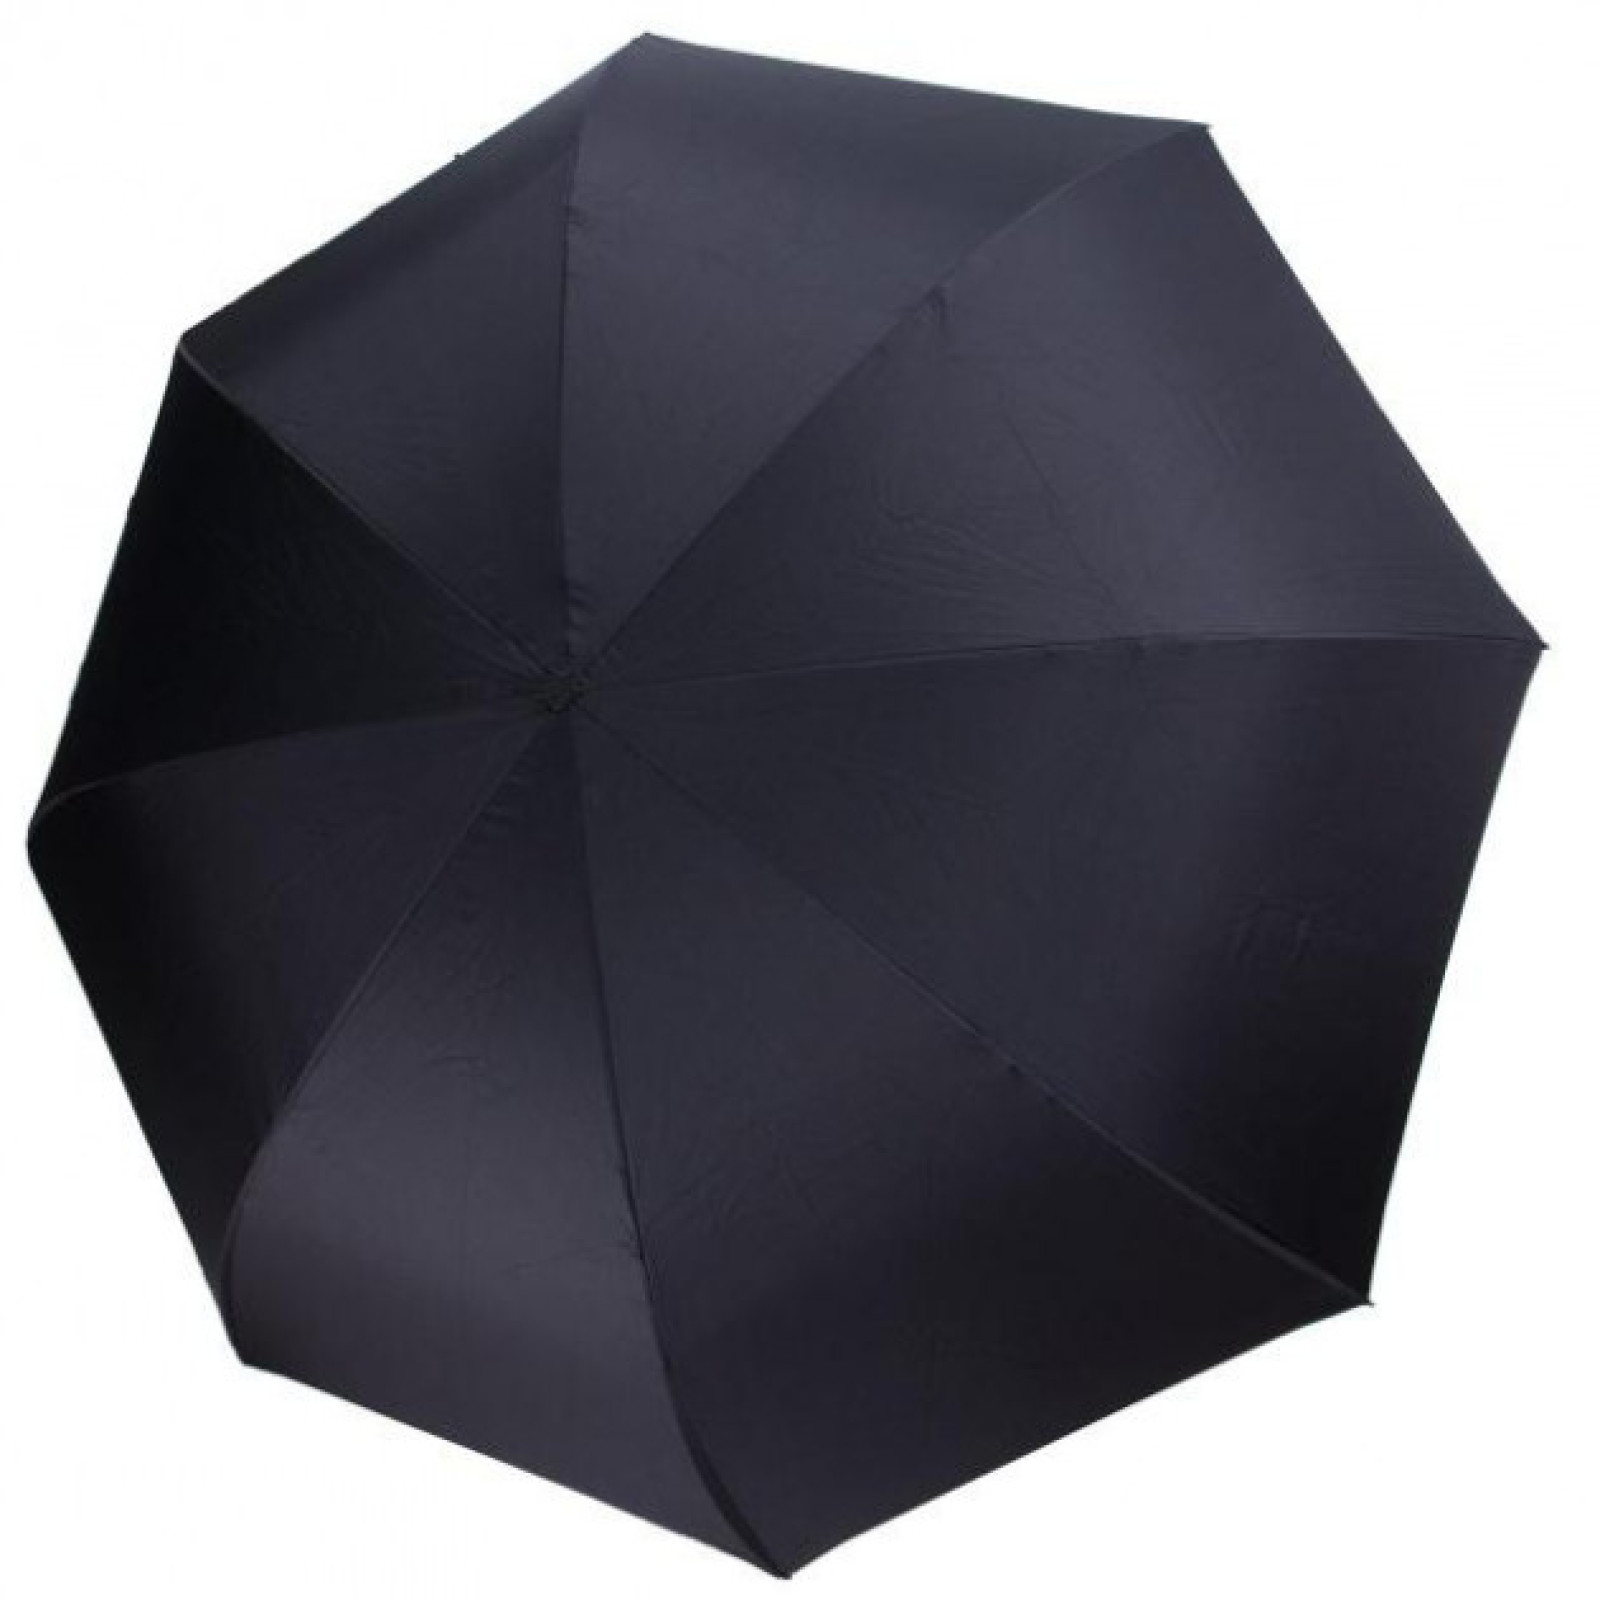 Зонт обратного сложения, антизонт, умный зонт, зонт наоборот Up Brella Красный 151024